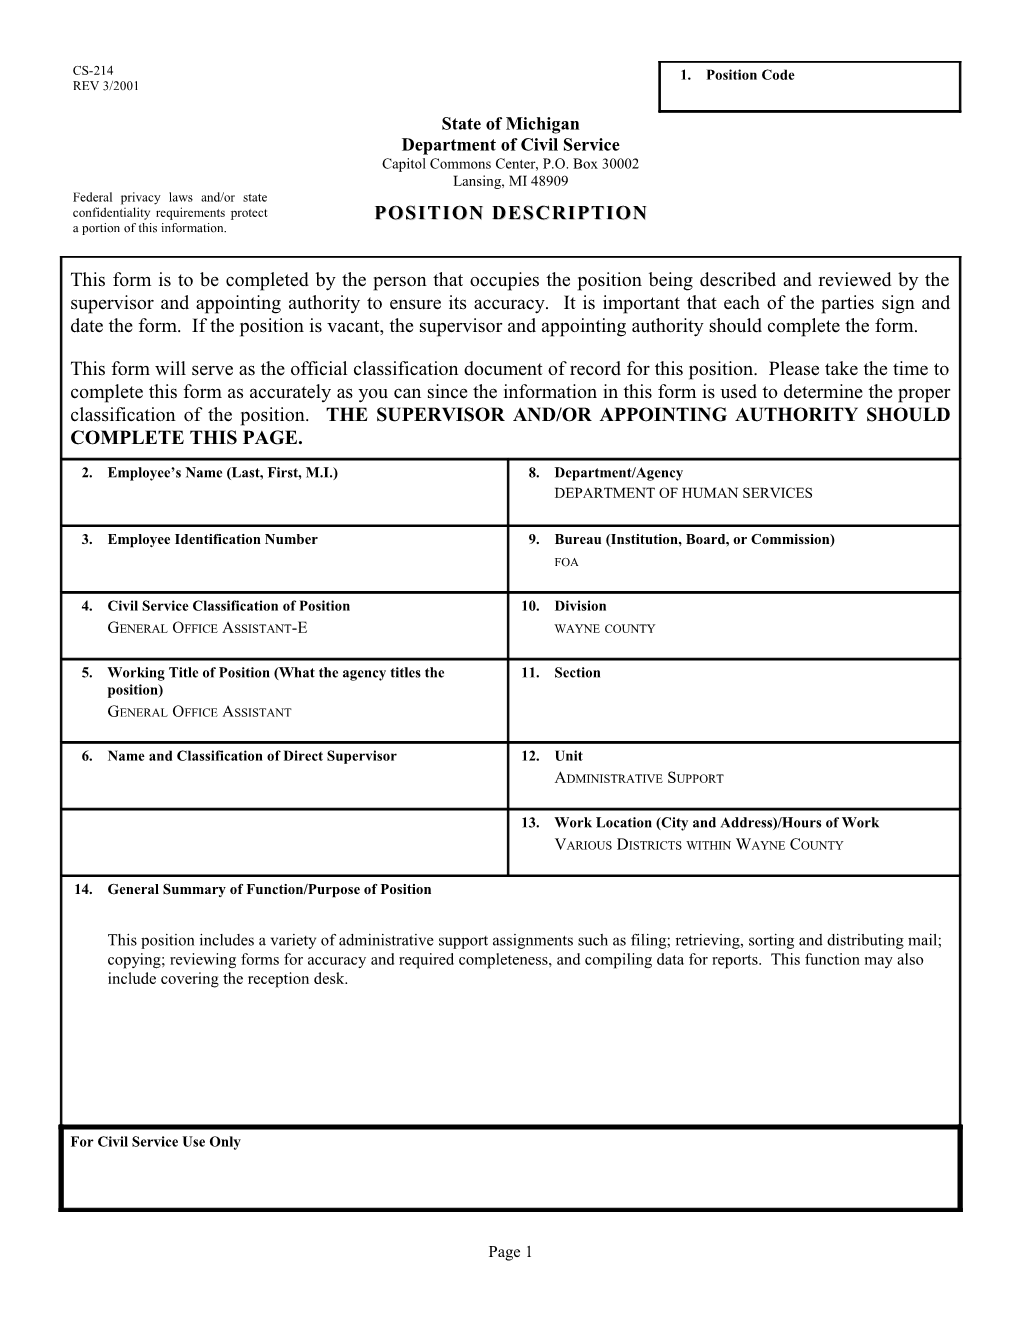 CS-214 Position Description Form s56